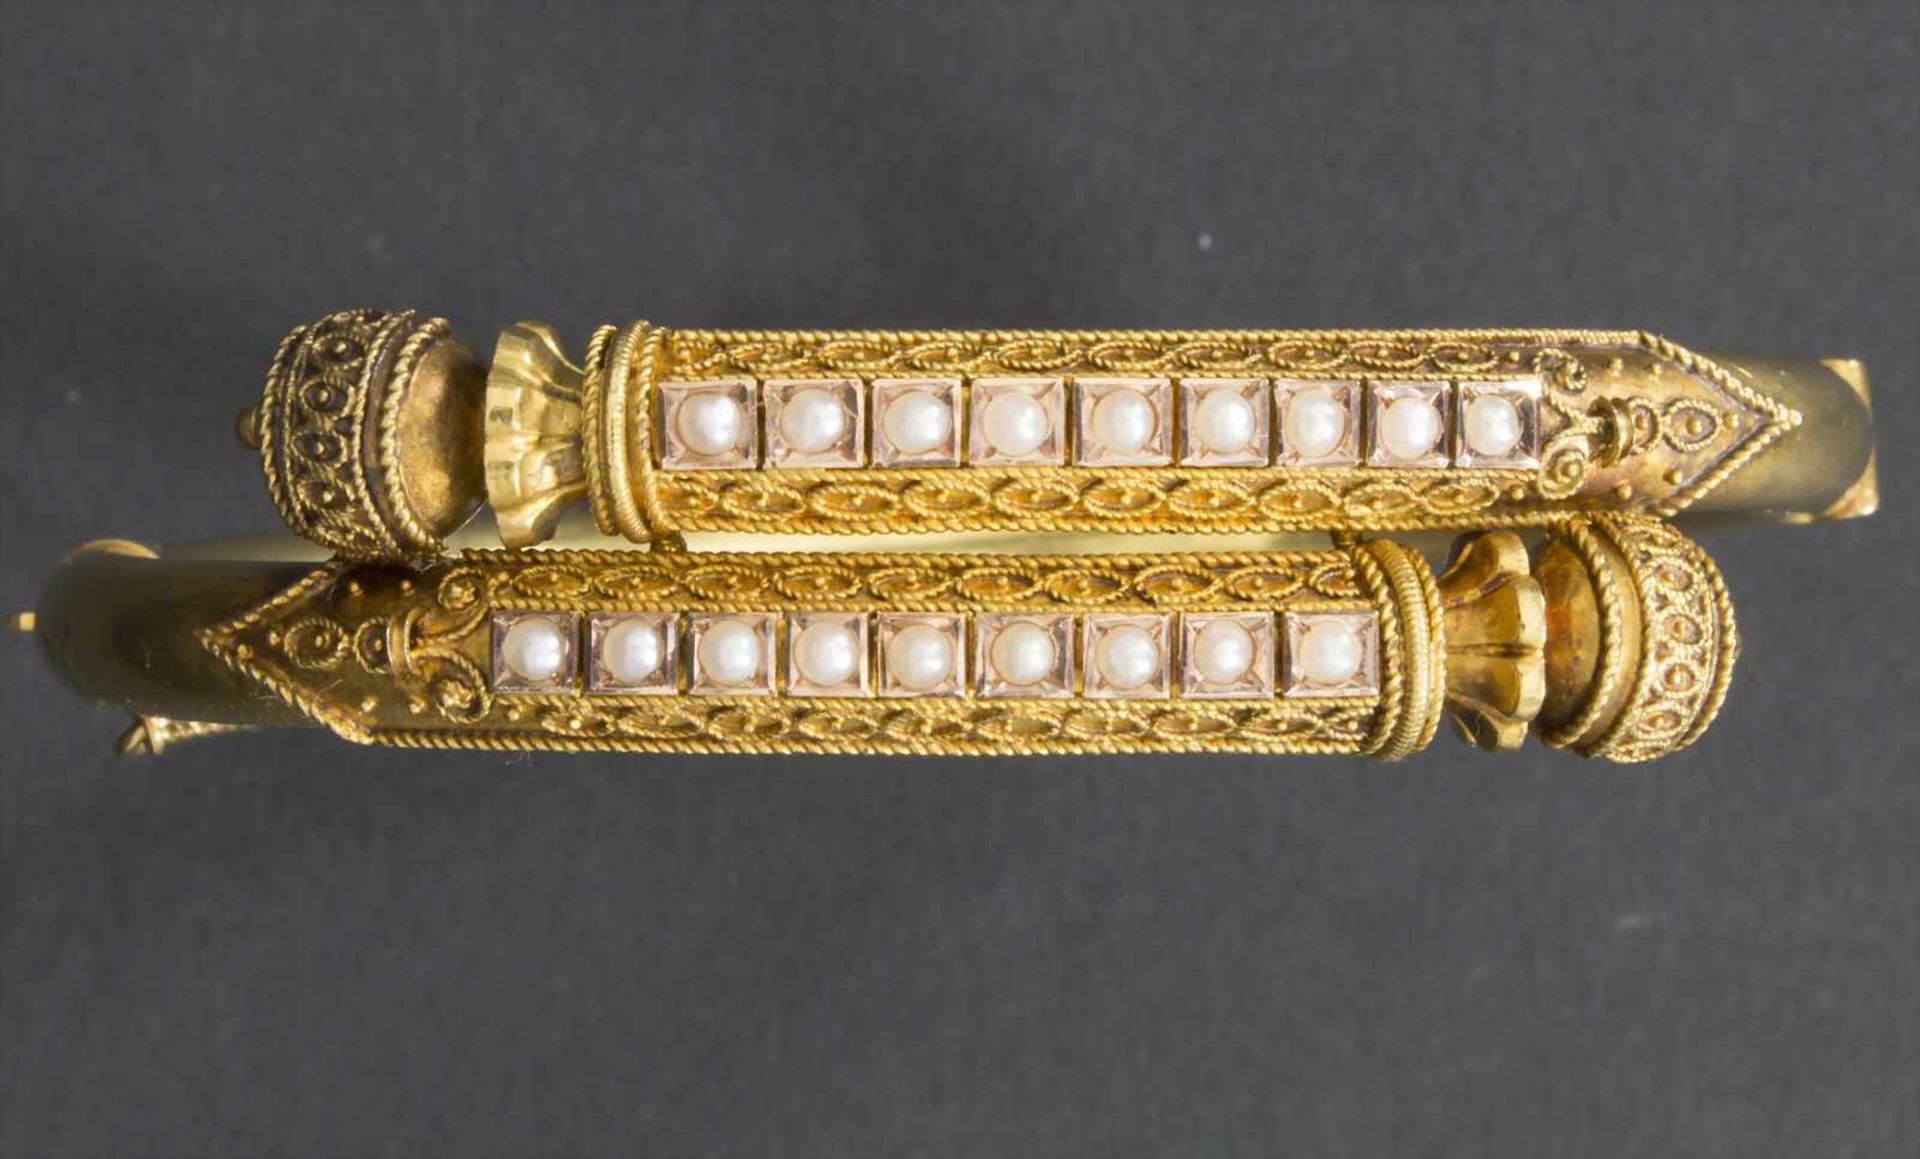 Armreif / A bracelet, 20 Jh.Material: 14 kt 585/000 Gold, Saatperlen,Maße: D. 7,0 cm, Gewicht: 14,